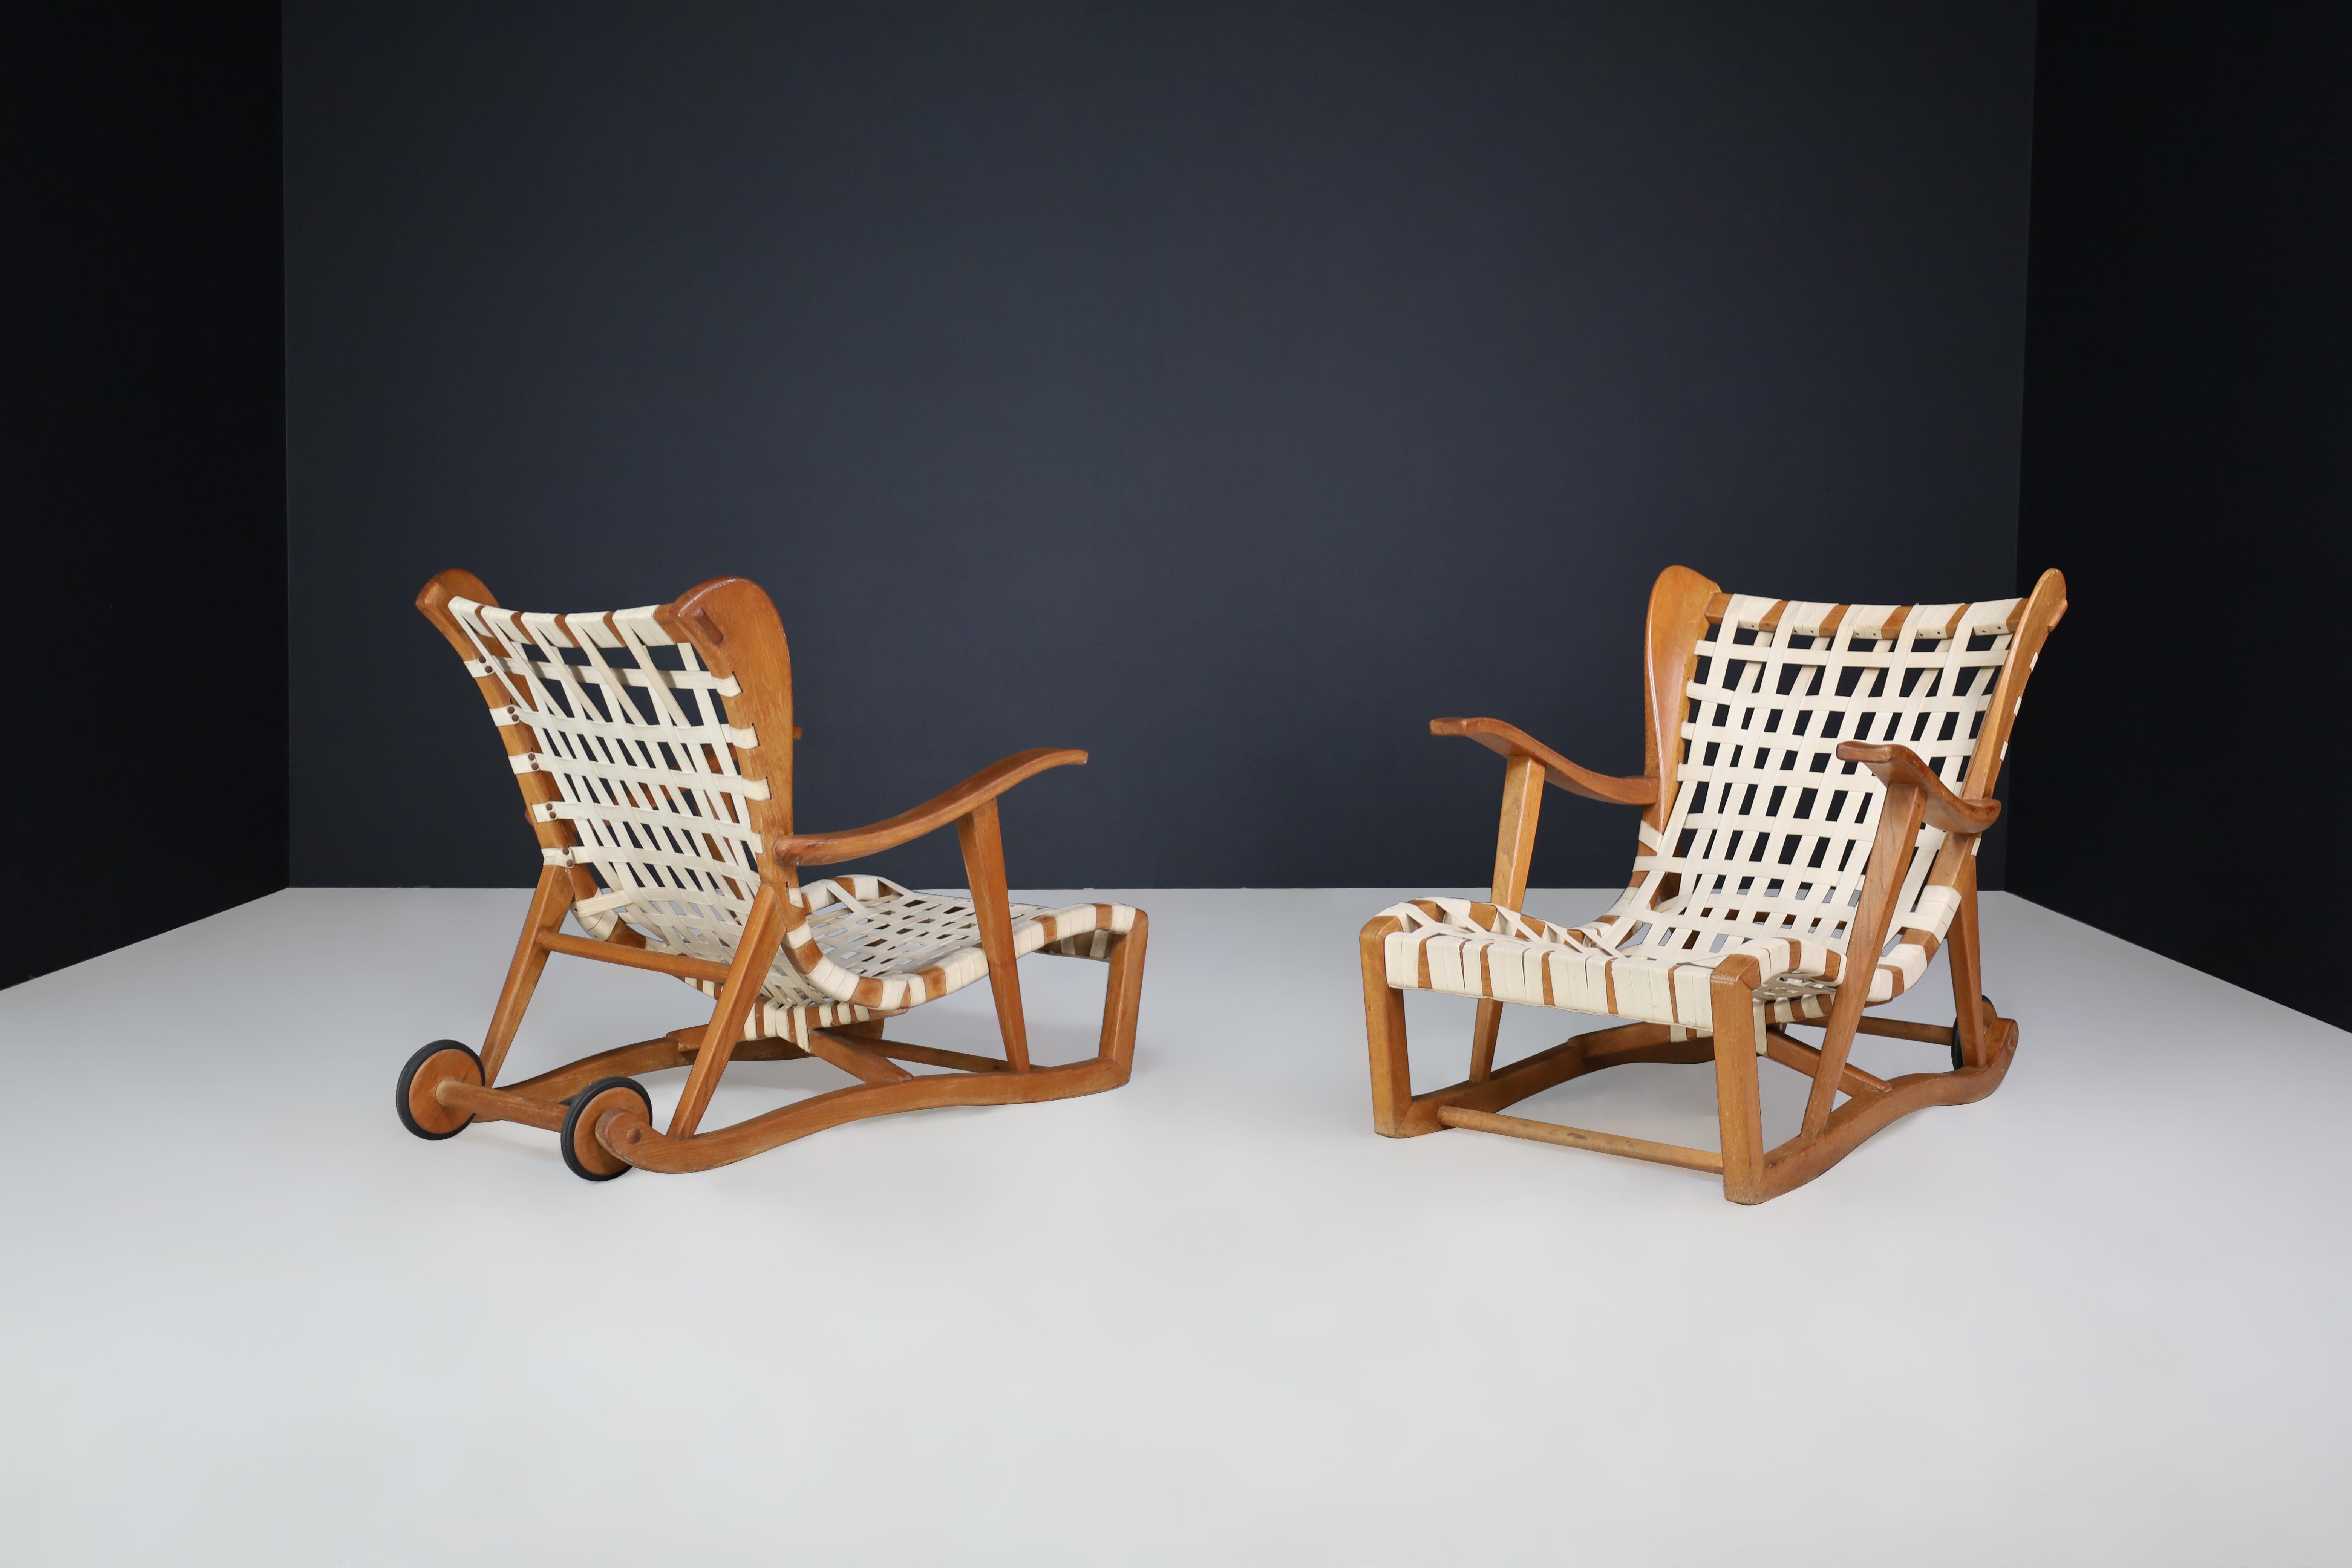 Chaises longues sculpturales en chêne par Guglielmo Pecorini, Italie, années 1950

Ces chaises longues ont été conçues par Guglielmo Pecorini dans les années 1950. Ils sont faits de cadres en chêne et de sangles en lin avec deux roues arrière. Bien